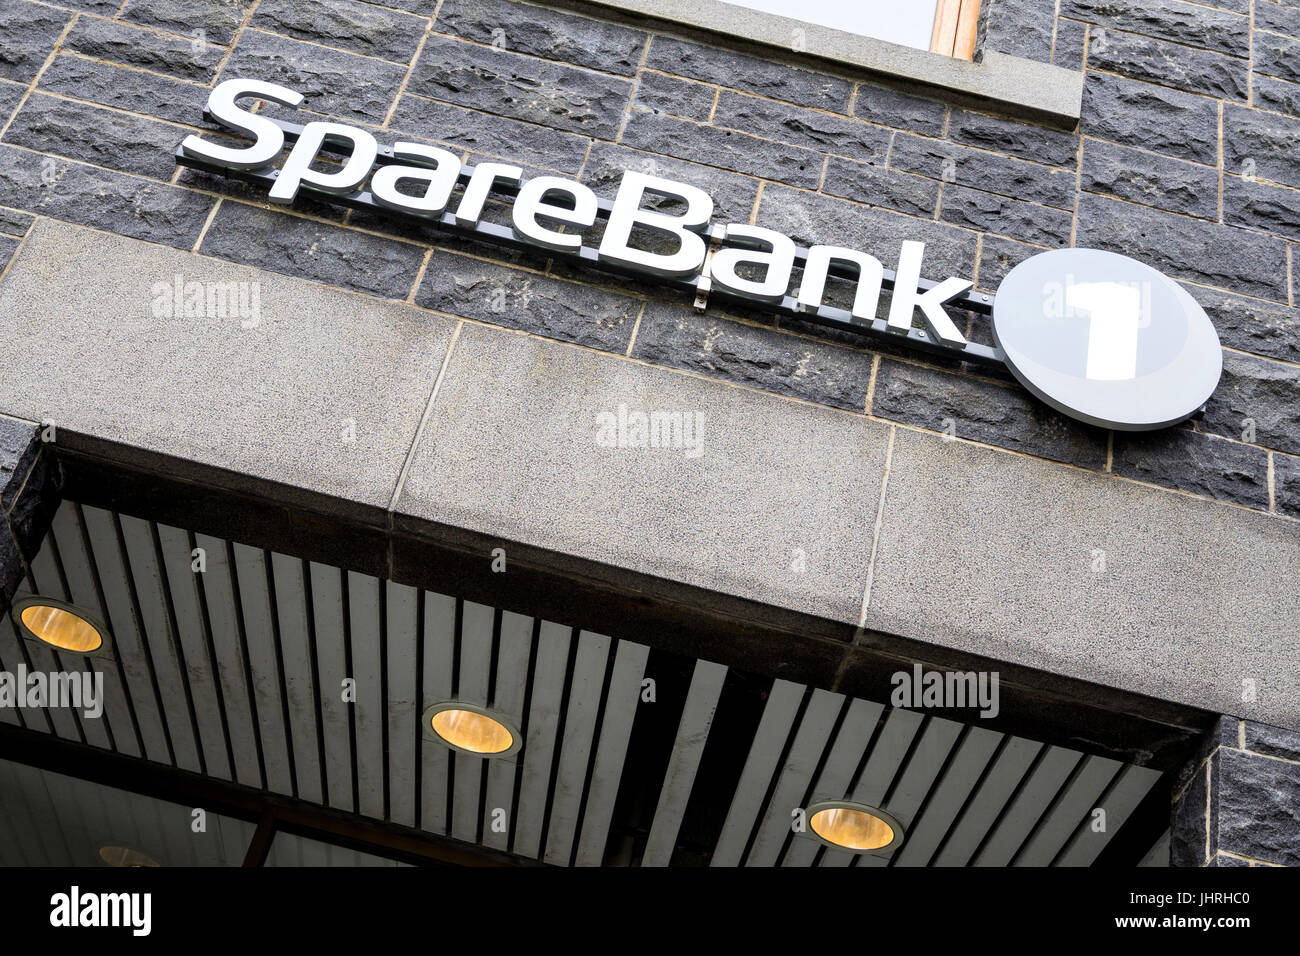 SpareBank 1 sign in filiali. SpareBank 1 è una alleanza norvegese e il marchio di un gruppo di banche di risparmio. Foto Stock